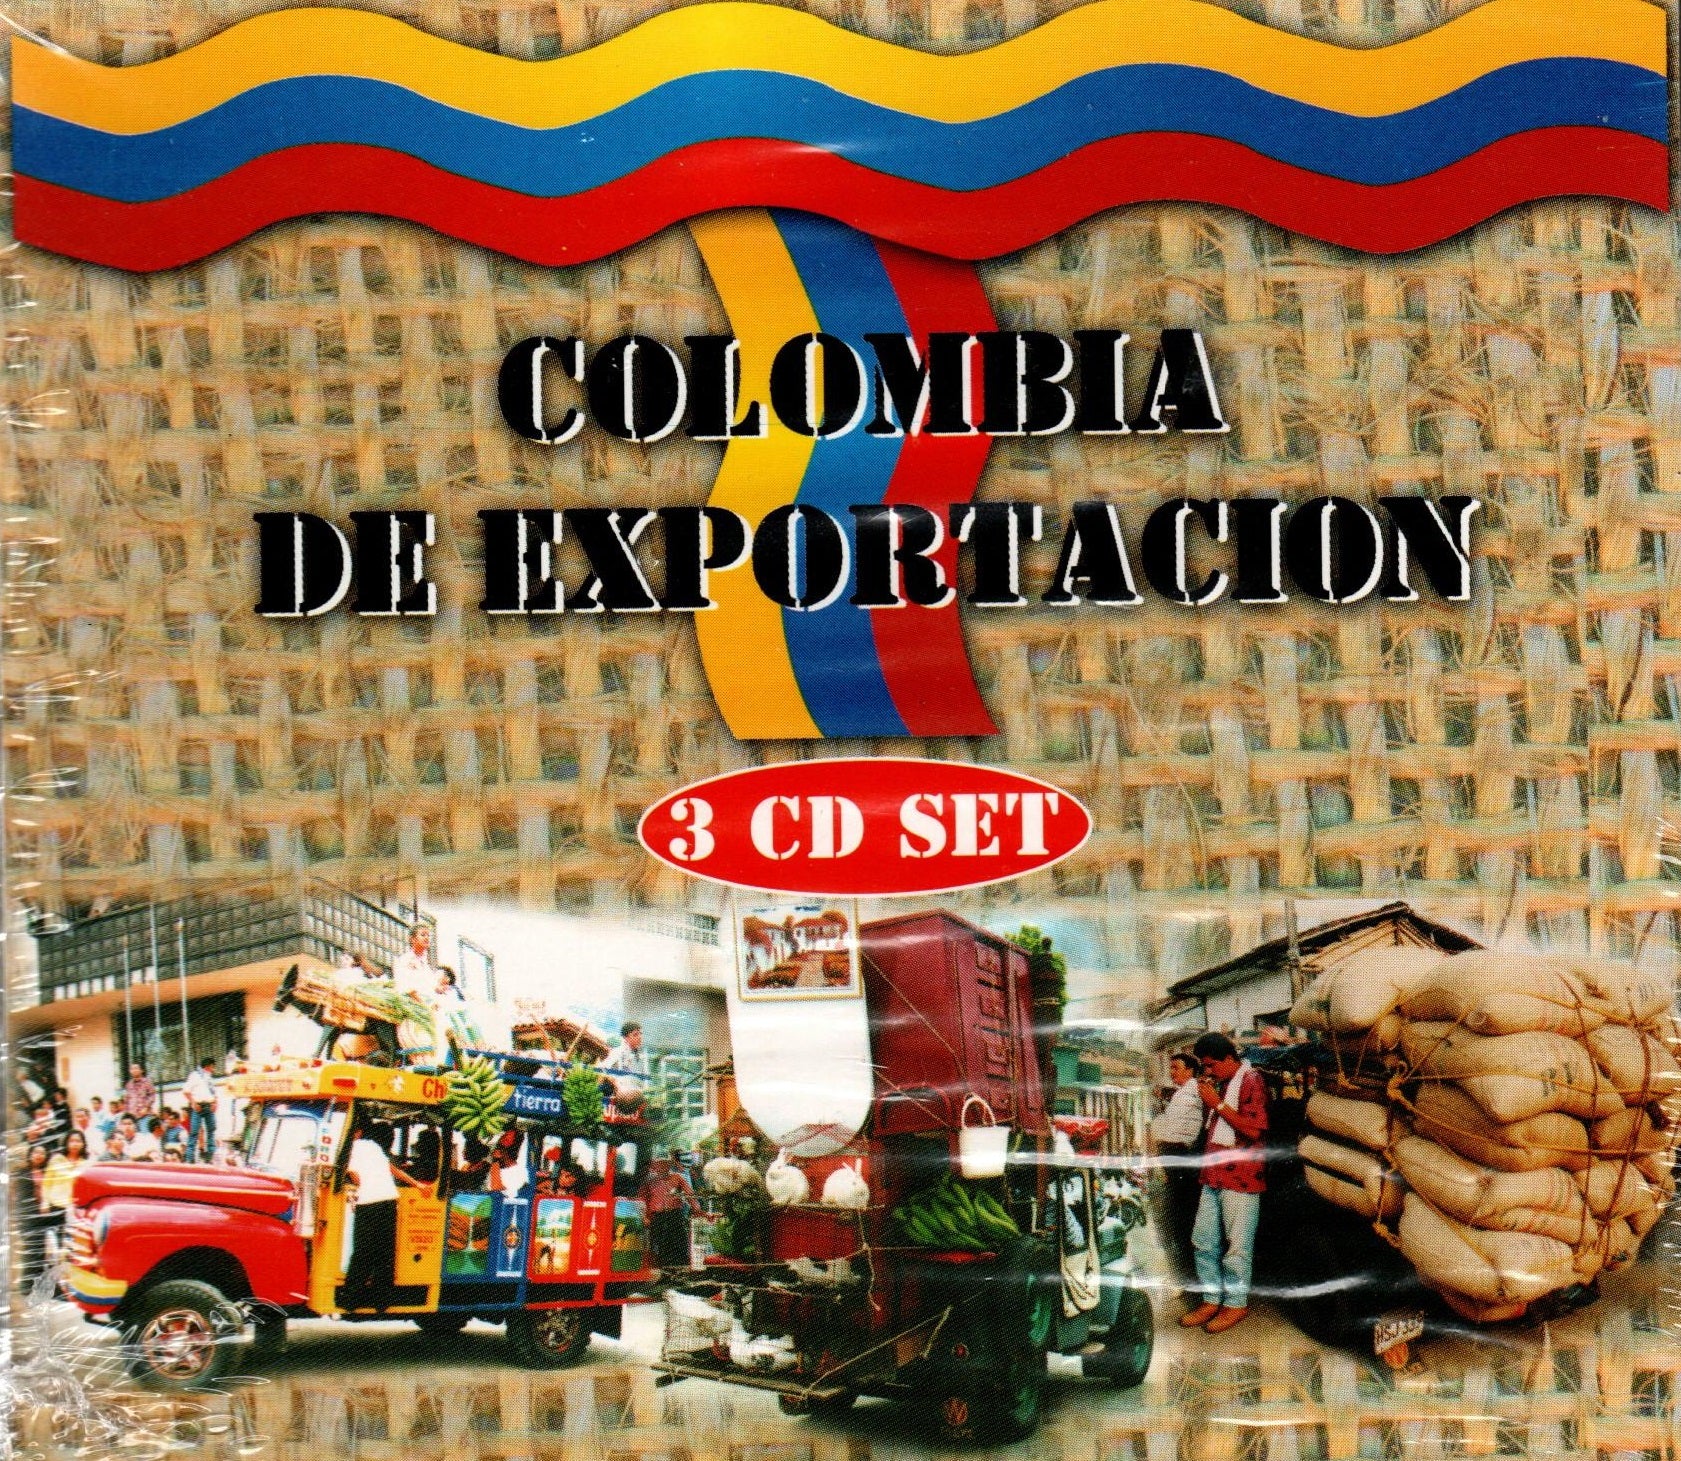 CD x 3 Colombia de exportación